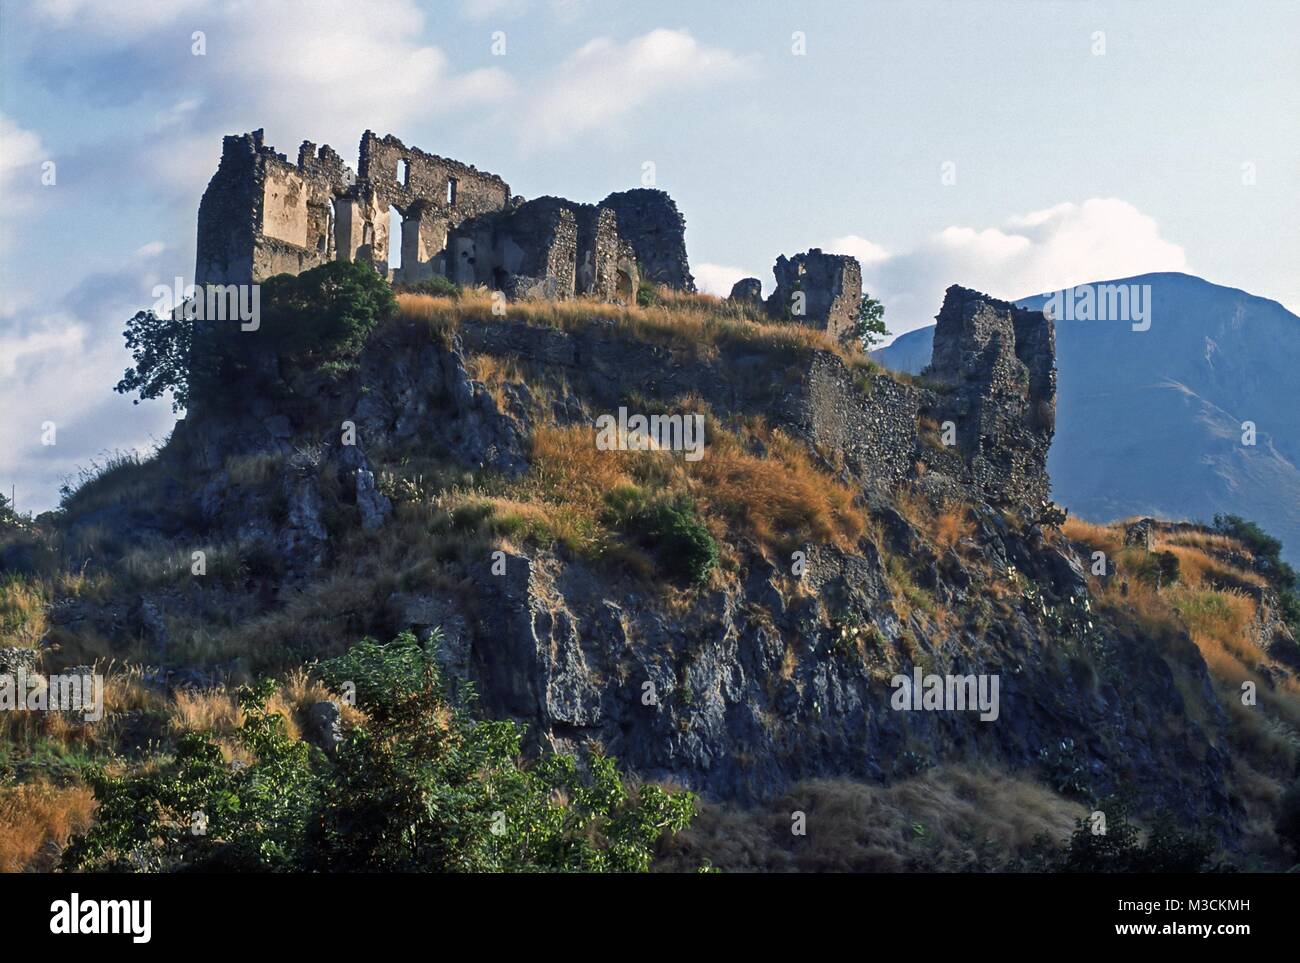 Calabria (Italy), Cedar Coast, the Norman castle of San Michele in Santa Maria del Cedro Stock Photo